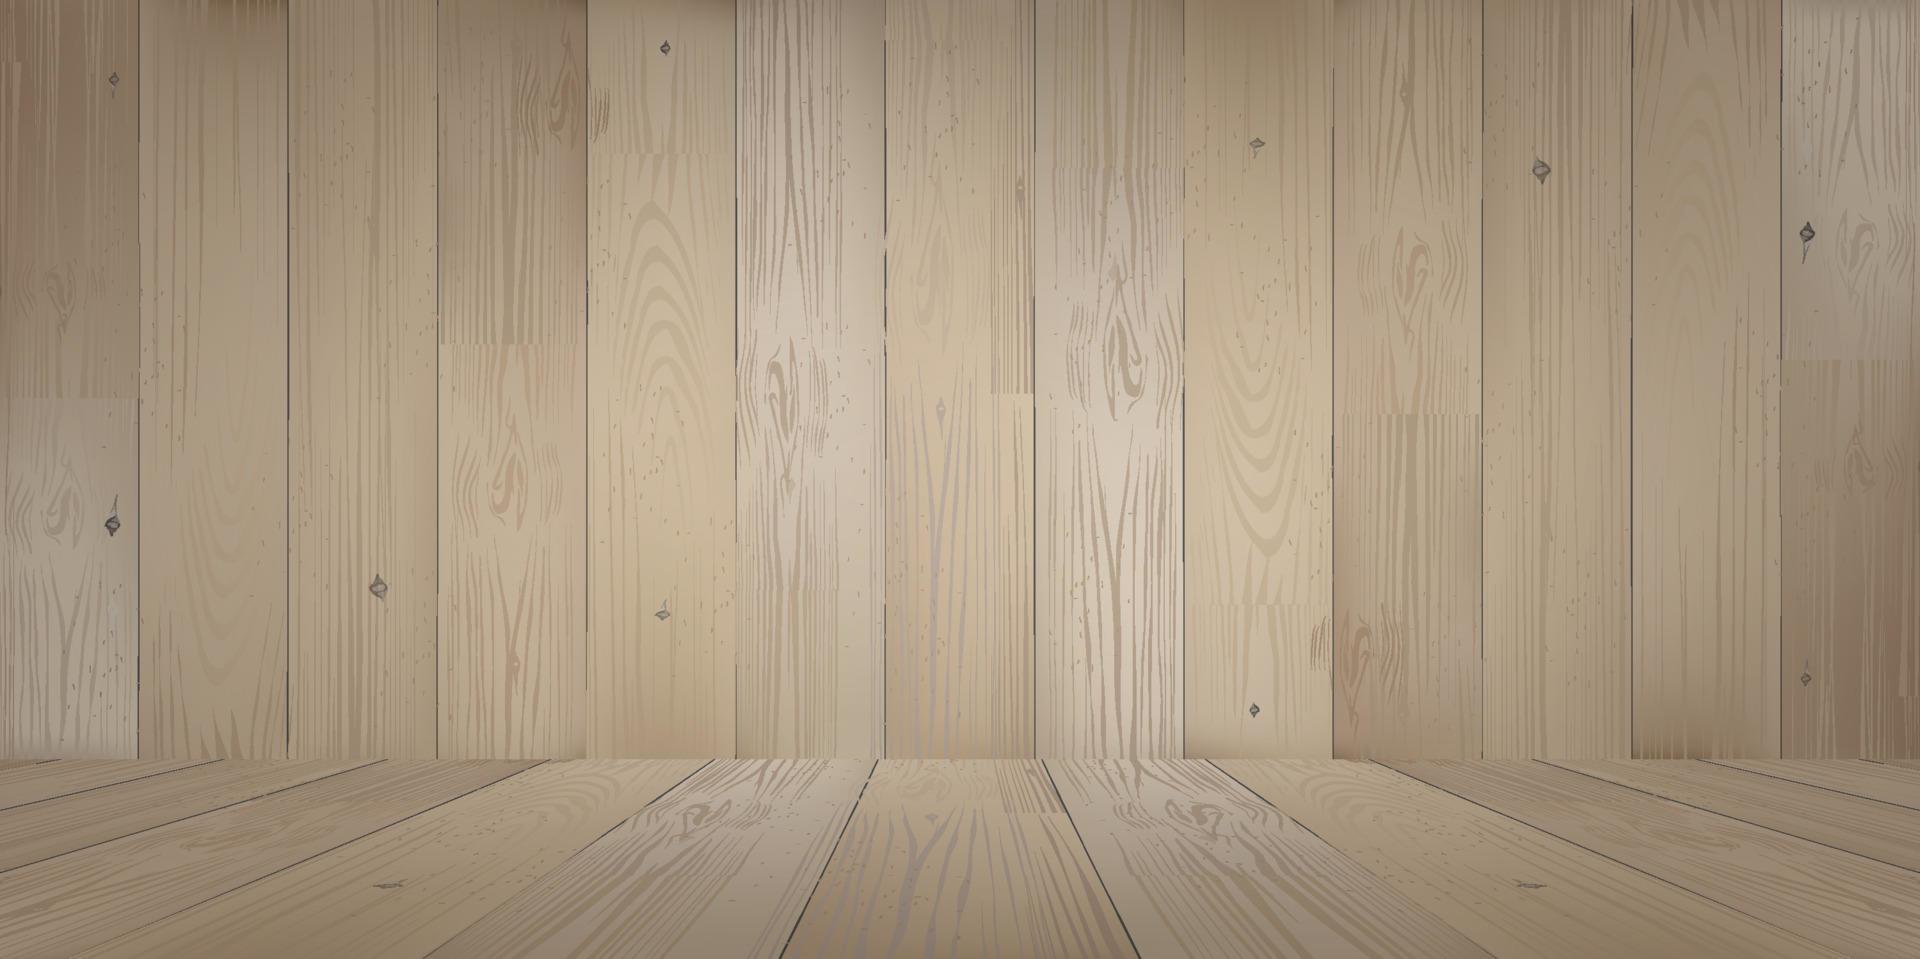 fond d'espace de chambre en bois avec plancher en bois en perspective. vecteur. vecteur